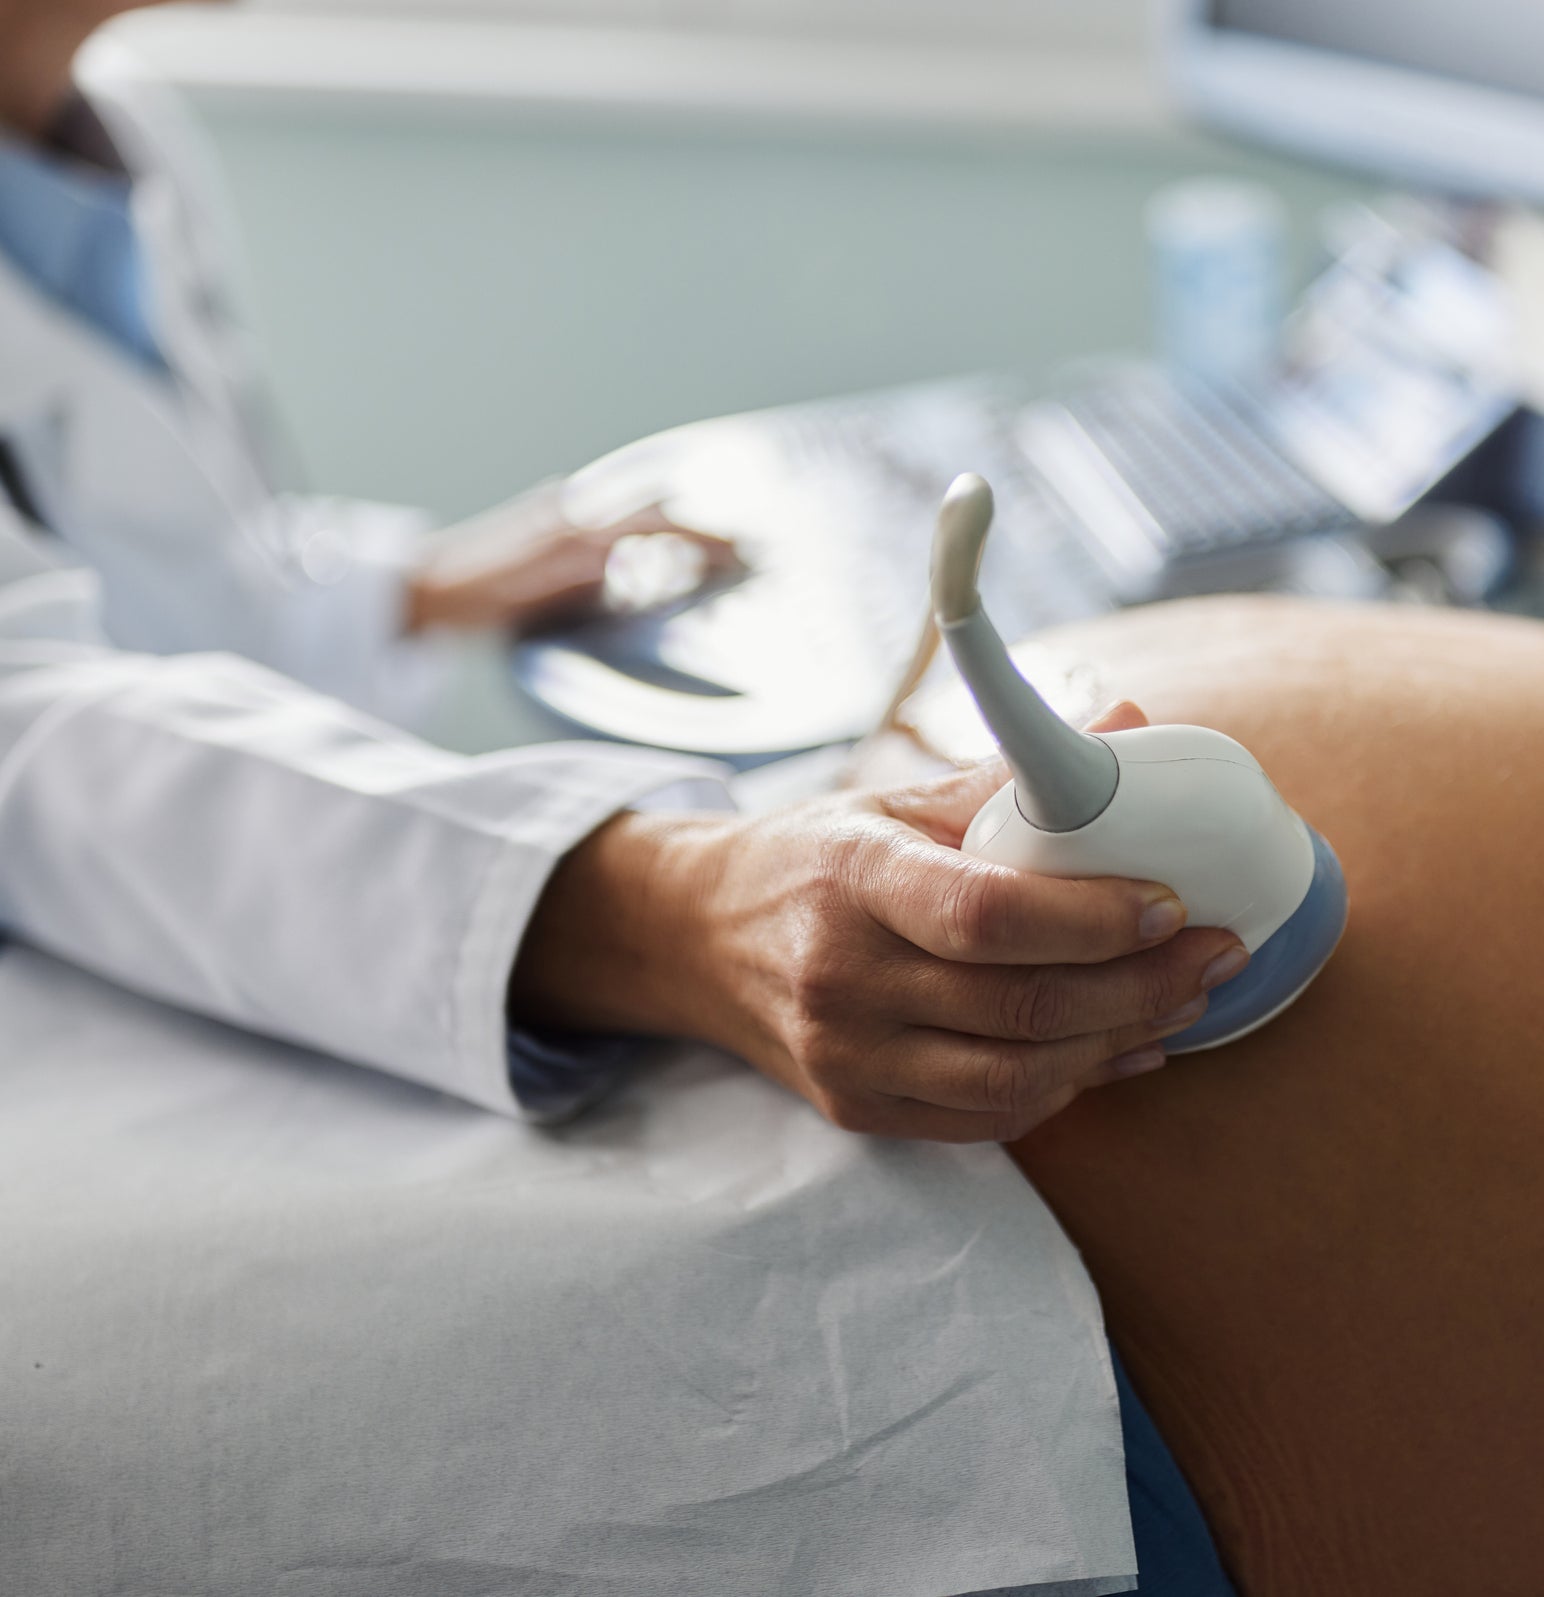 A woman having an ultrasound